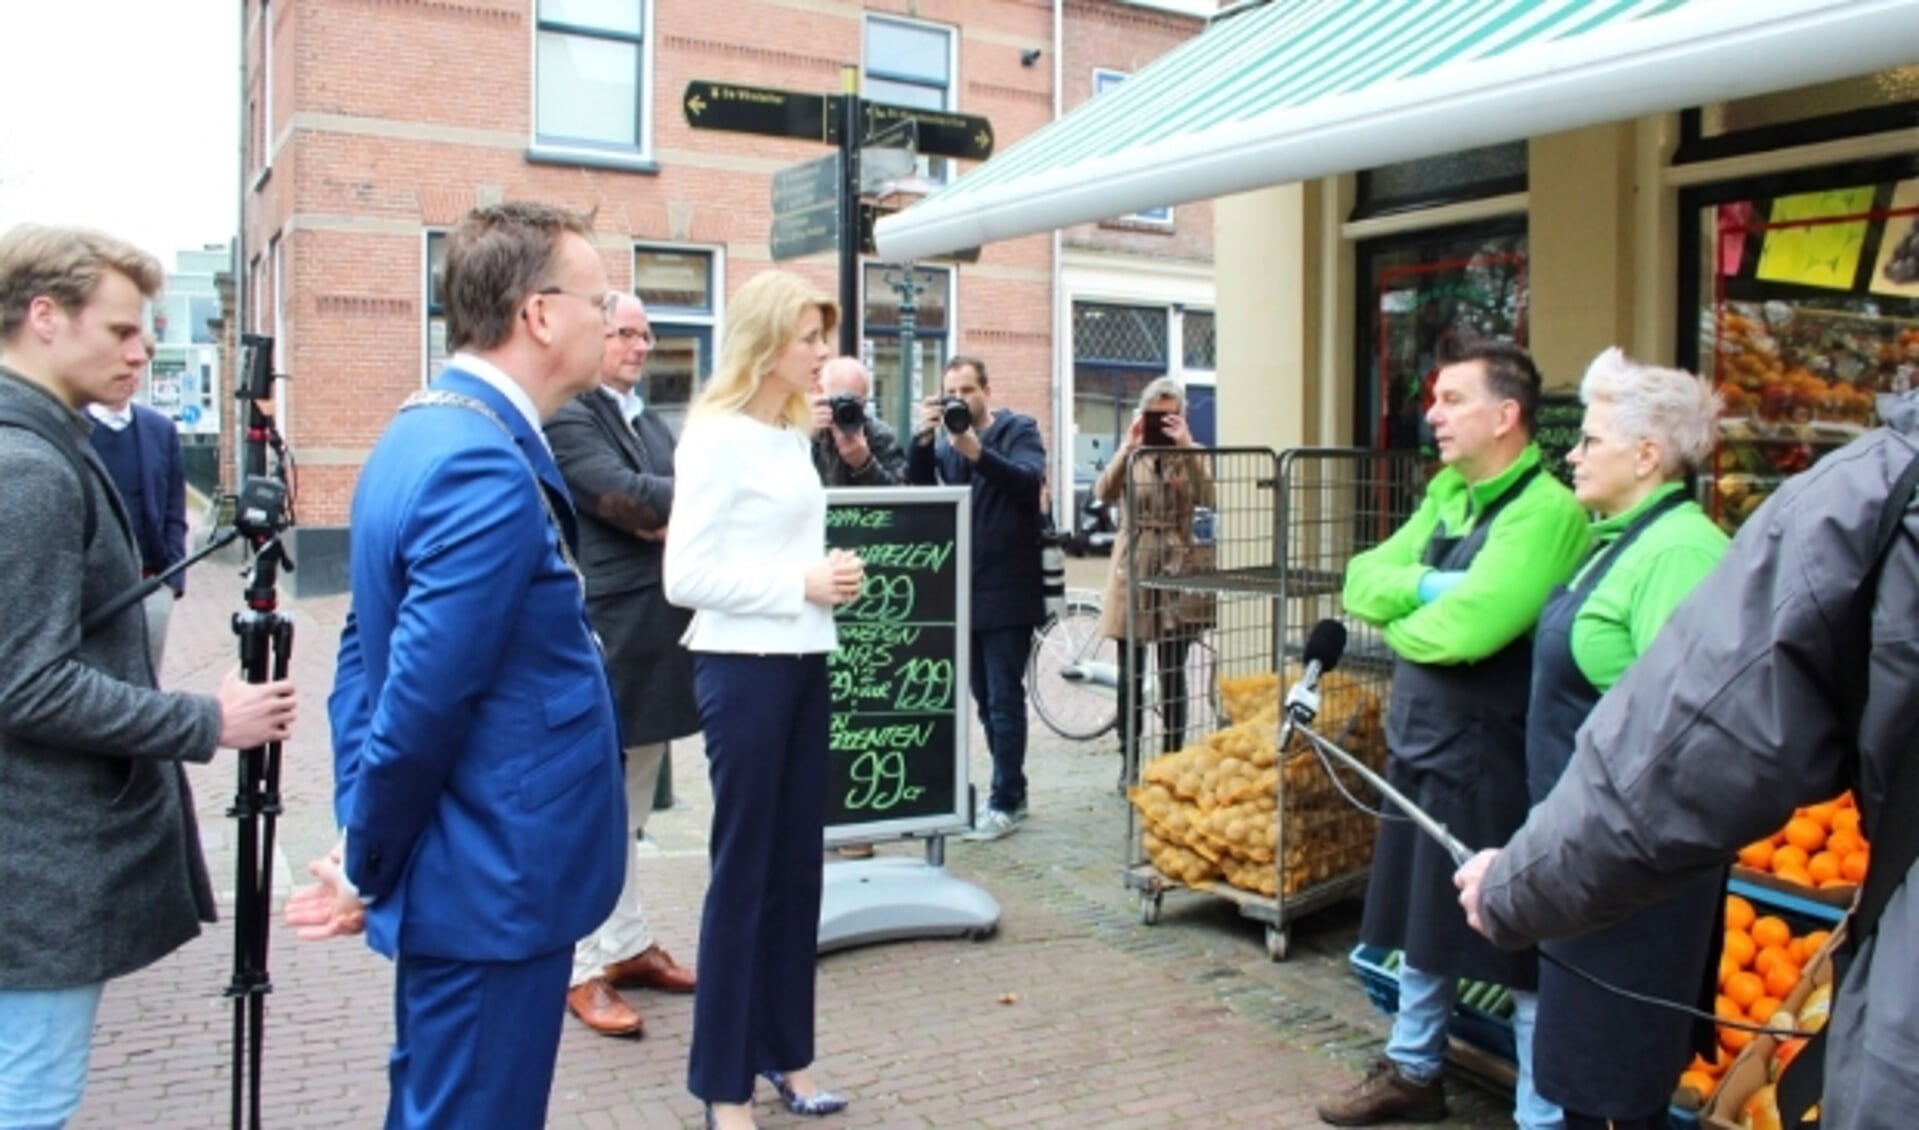 Staatssecretaris Mona Keijzer bezocht  ondernemers om hun - op 1,5 meter afstand - een hart onder de riem te steken. (Foto: Lysette Verwegen)